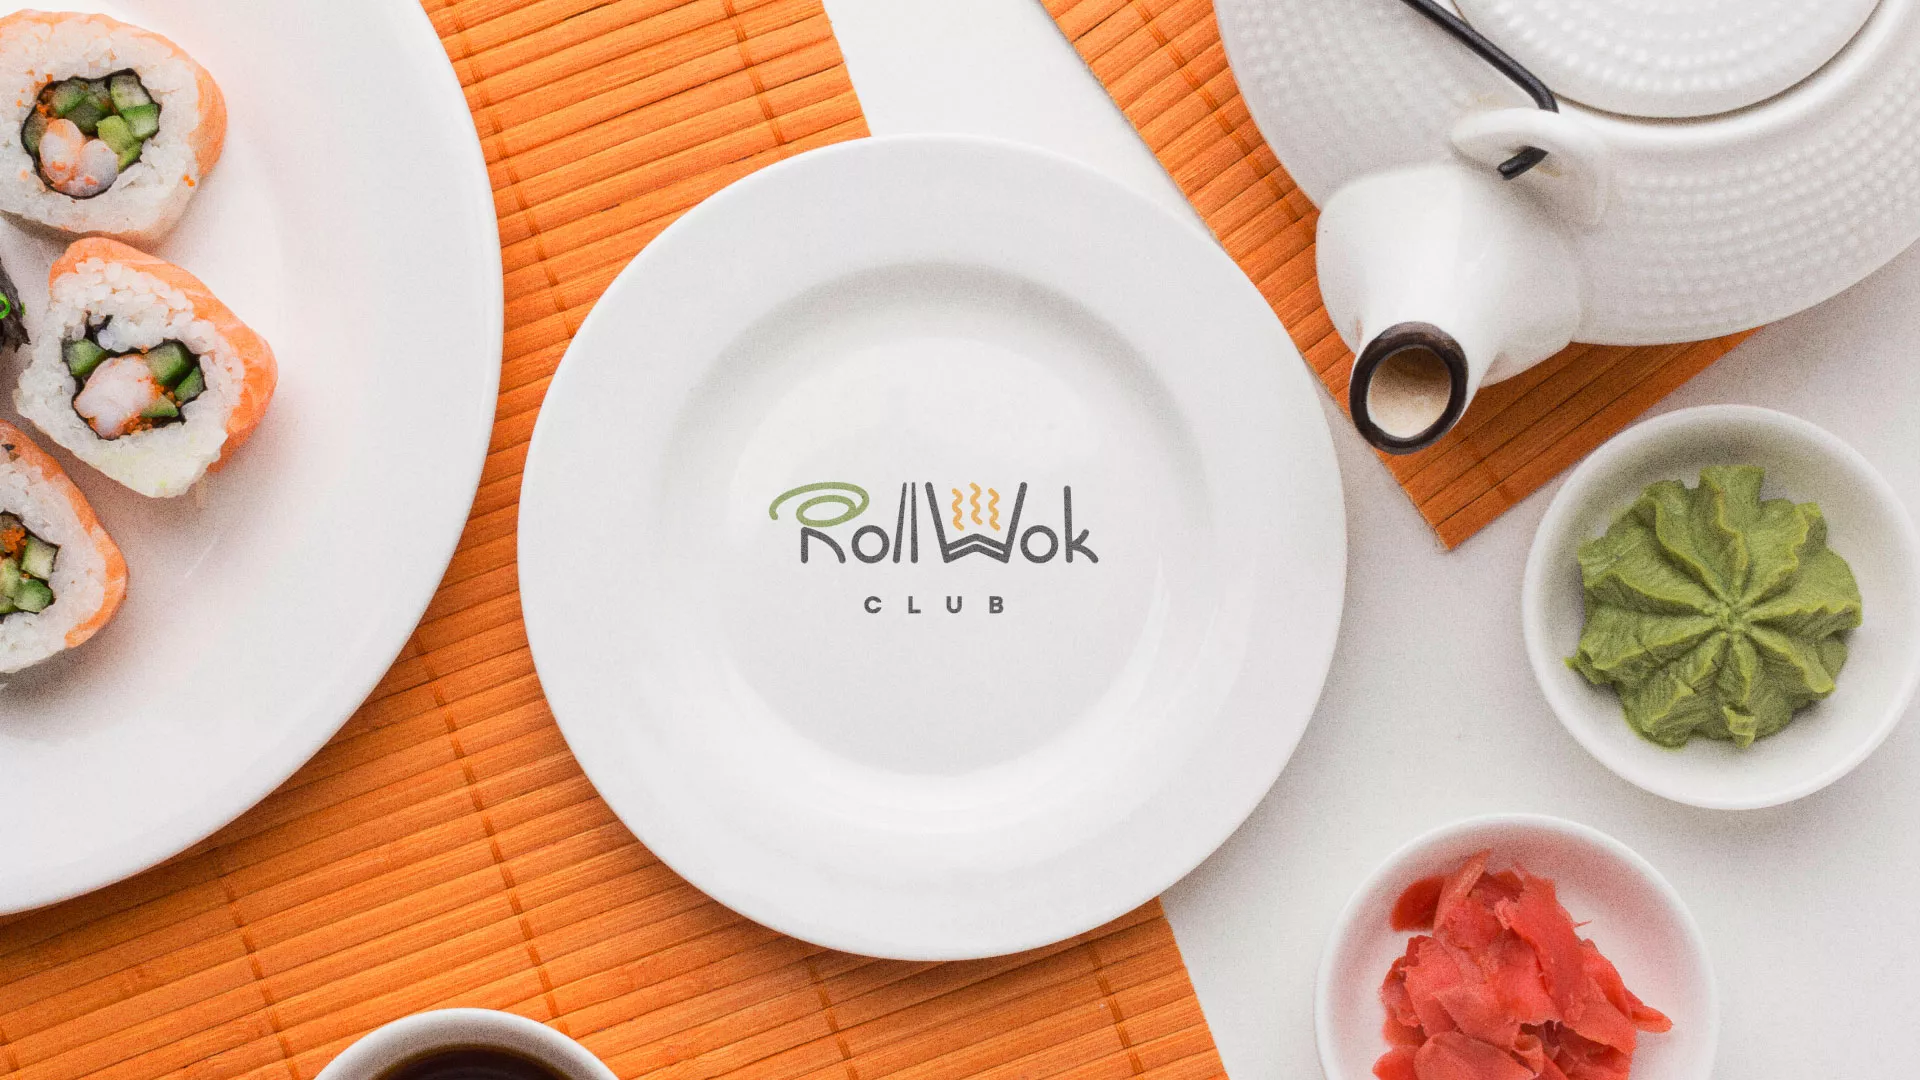 Разработка логотипа и фирменного стиля суши-бара «Roll Wok Club» в Сердобске